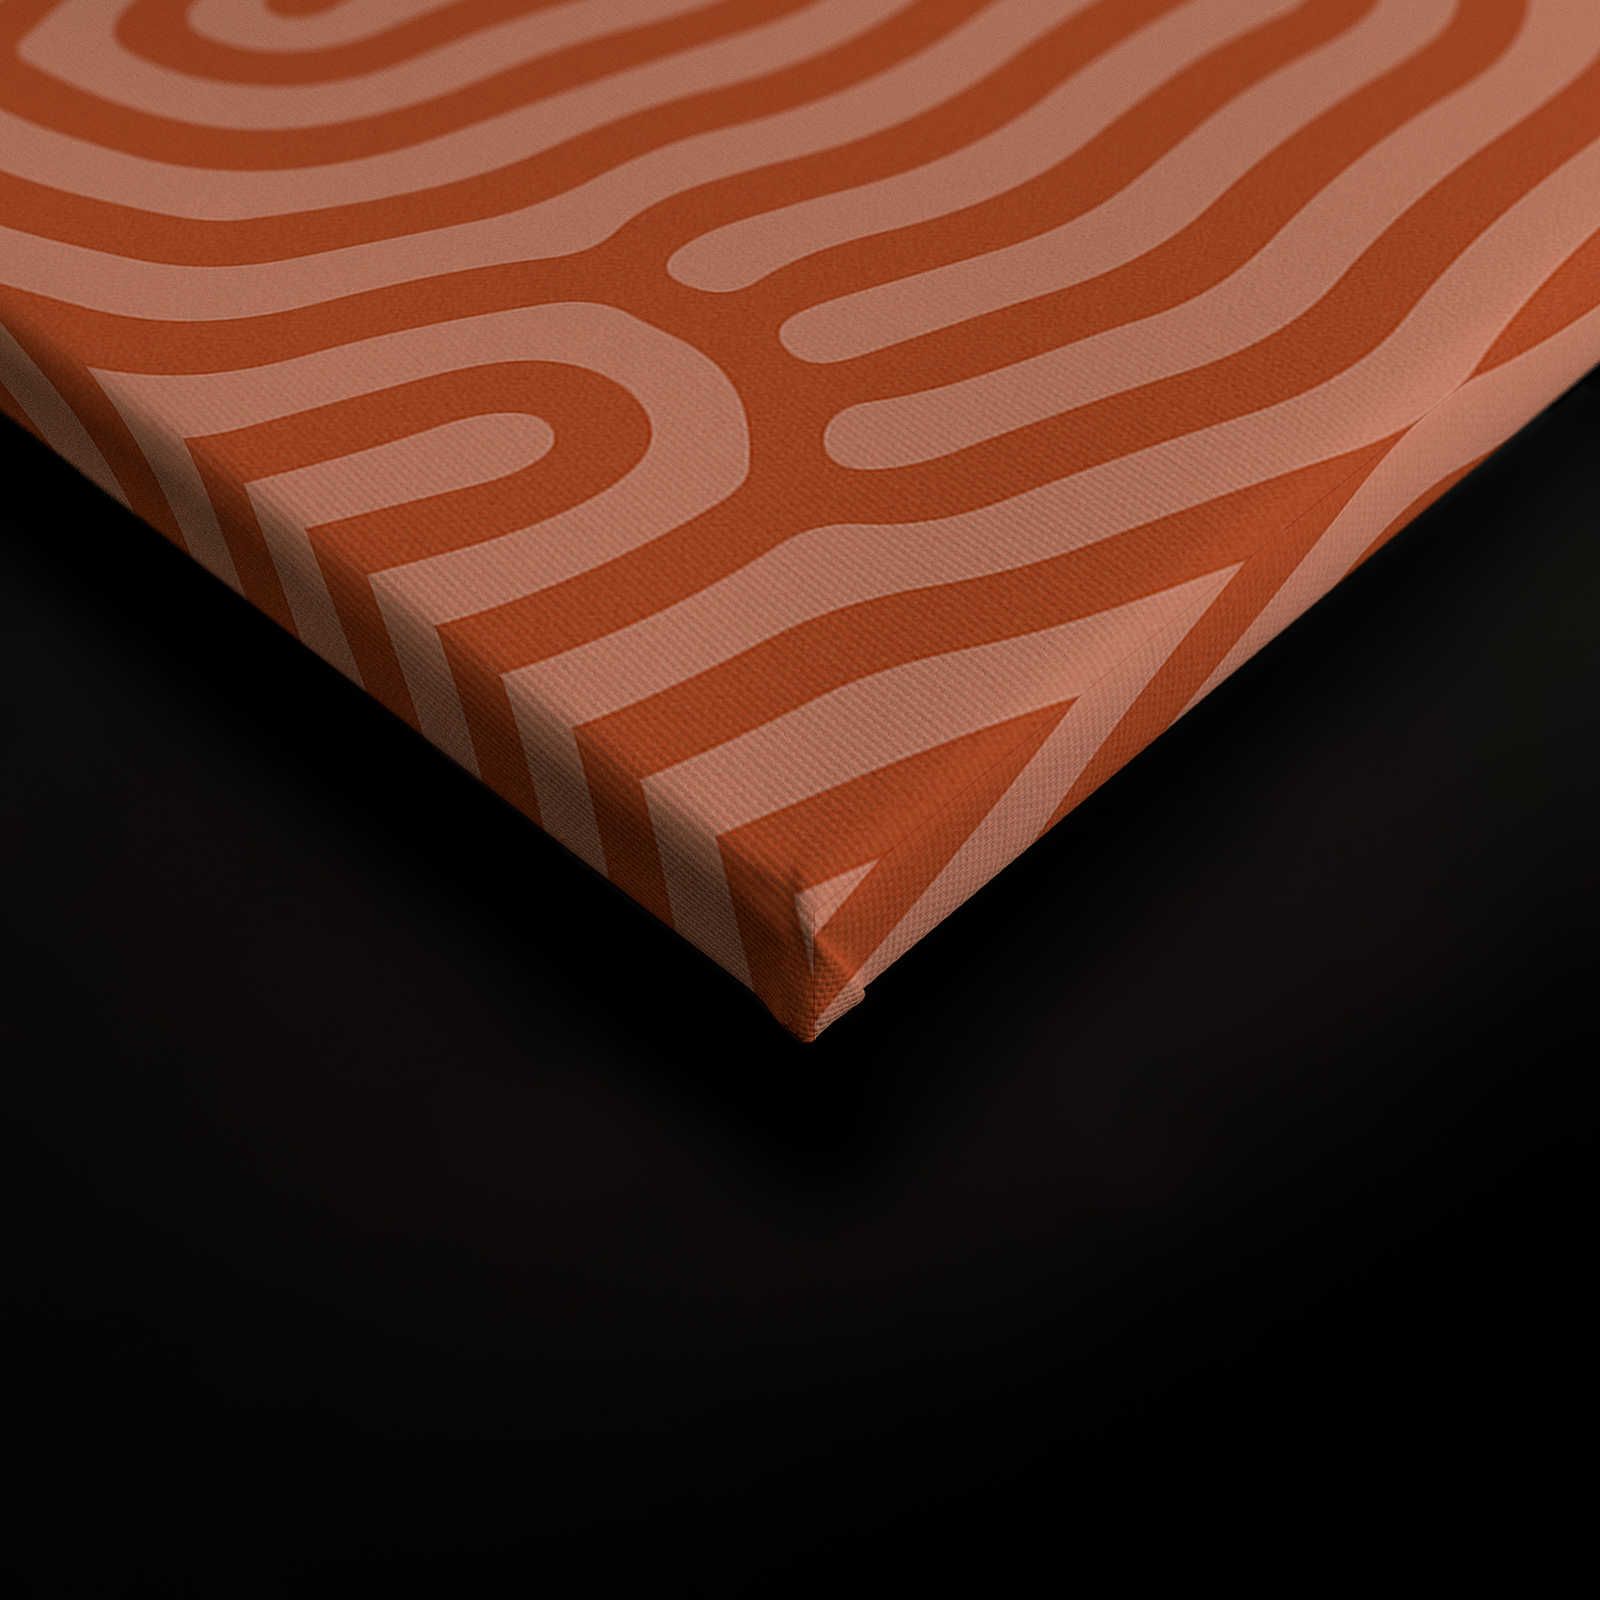             Sahel 3 - Toile rouge avec motif de lignes organiques - 0,90 m x 0,60 m
        